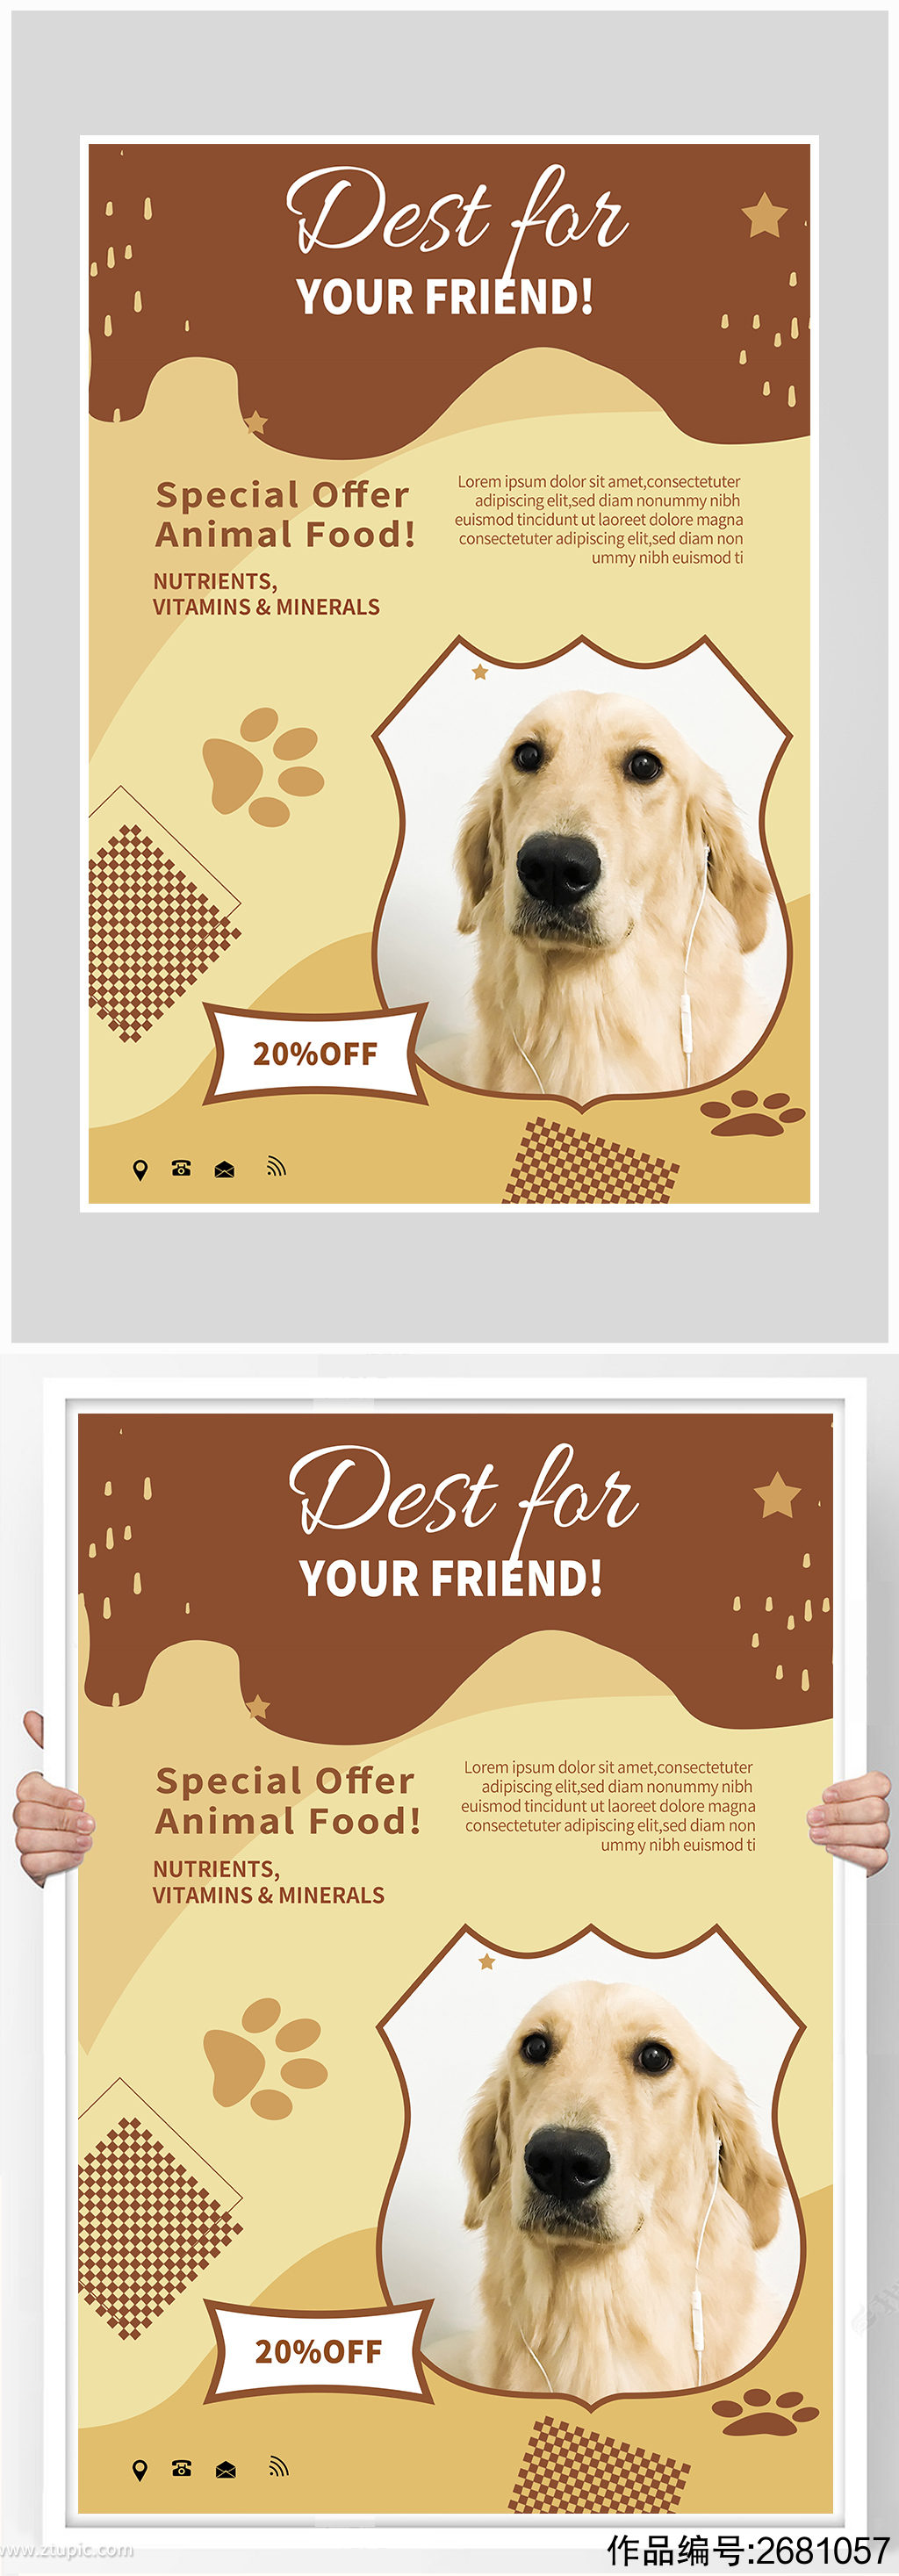 简约唯美小狗宠物店海报设计模板下载-编号2681057-众图网